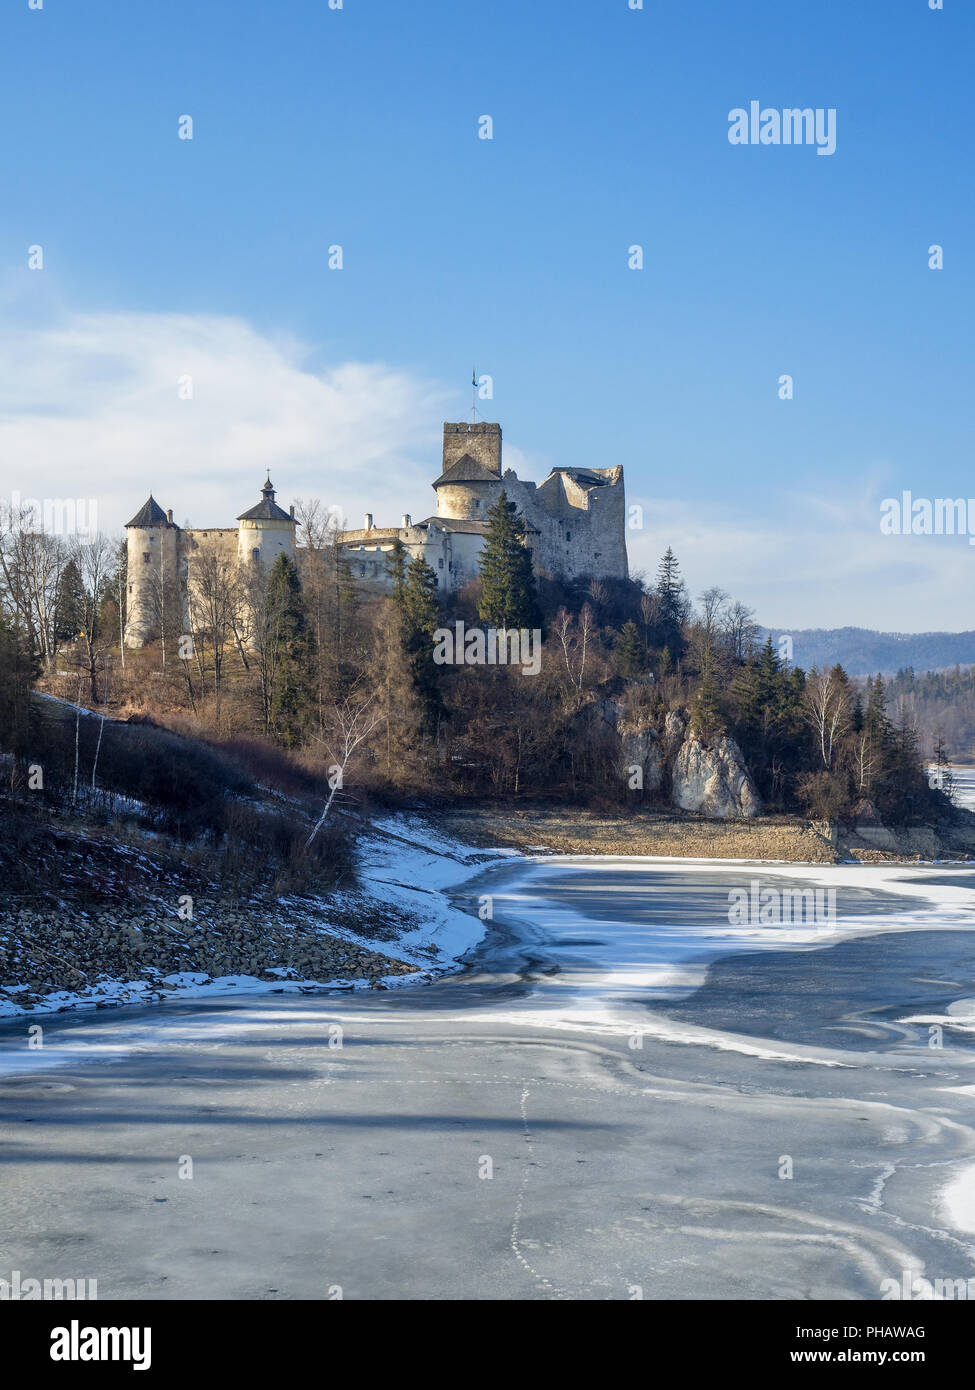 Castello medievale in Niedzica, Polonia, in inverno a parzialmente congelati Czorsztyn artificiale lago sul fiume Dunajec. La luce del tramonto. Foto Stock